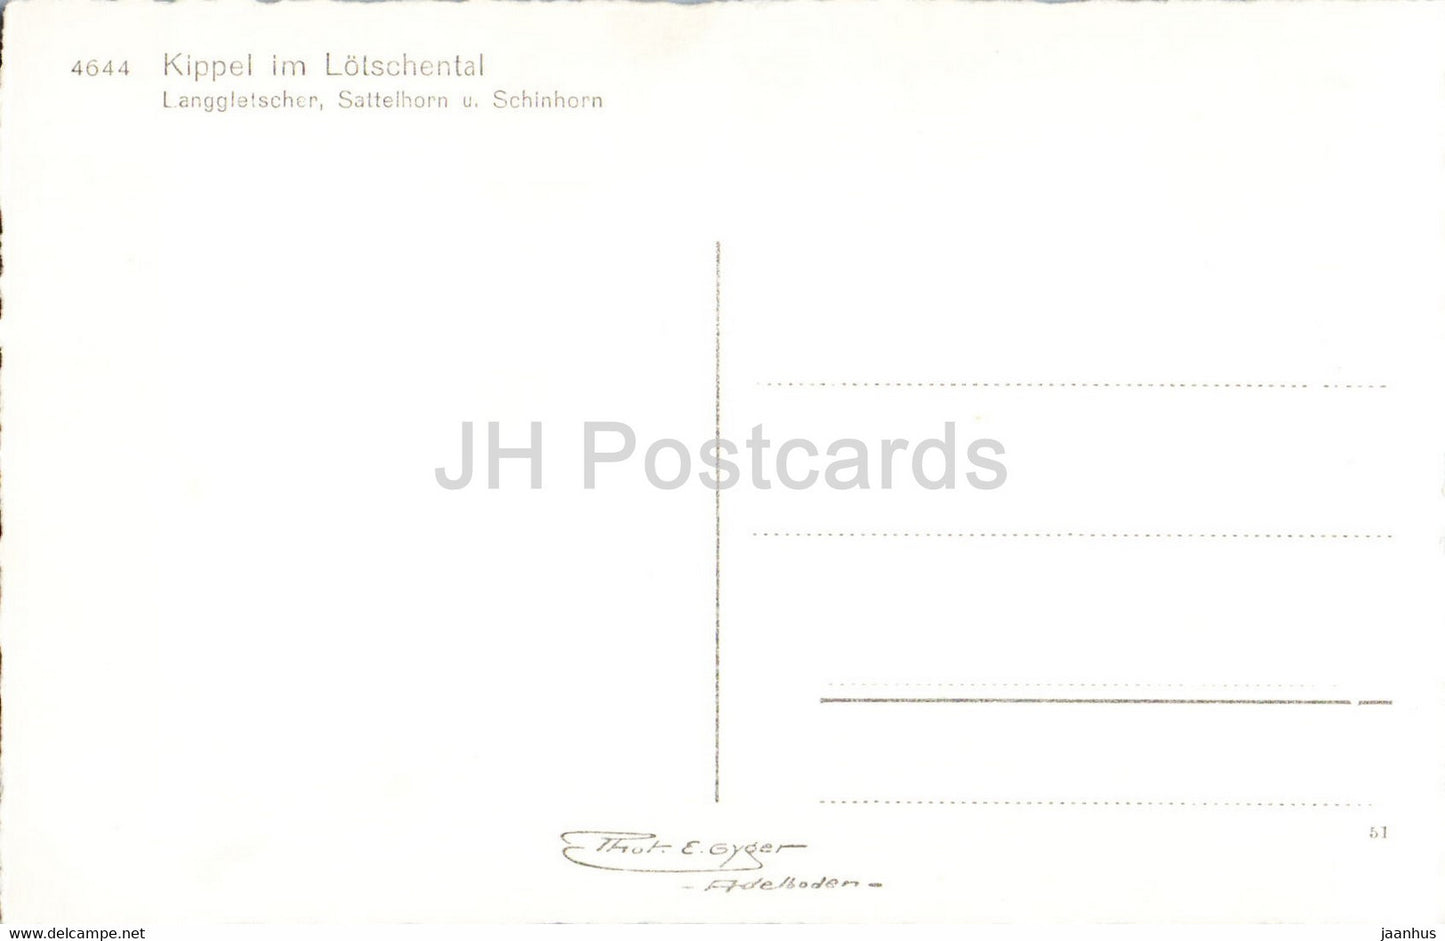 Kippel im Lotschental - Langgletscher Sattelhorn Schinhorn - 4644 - old postcard - Switzerland - unused